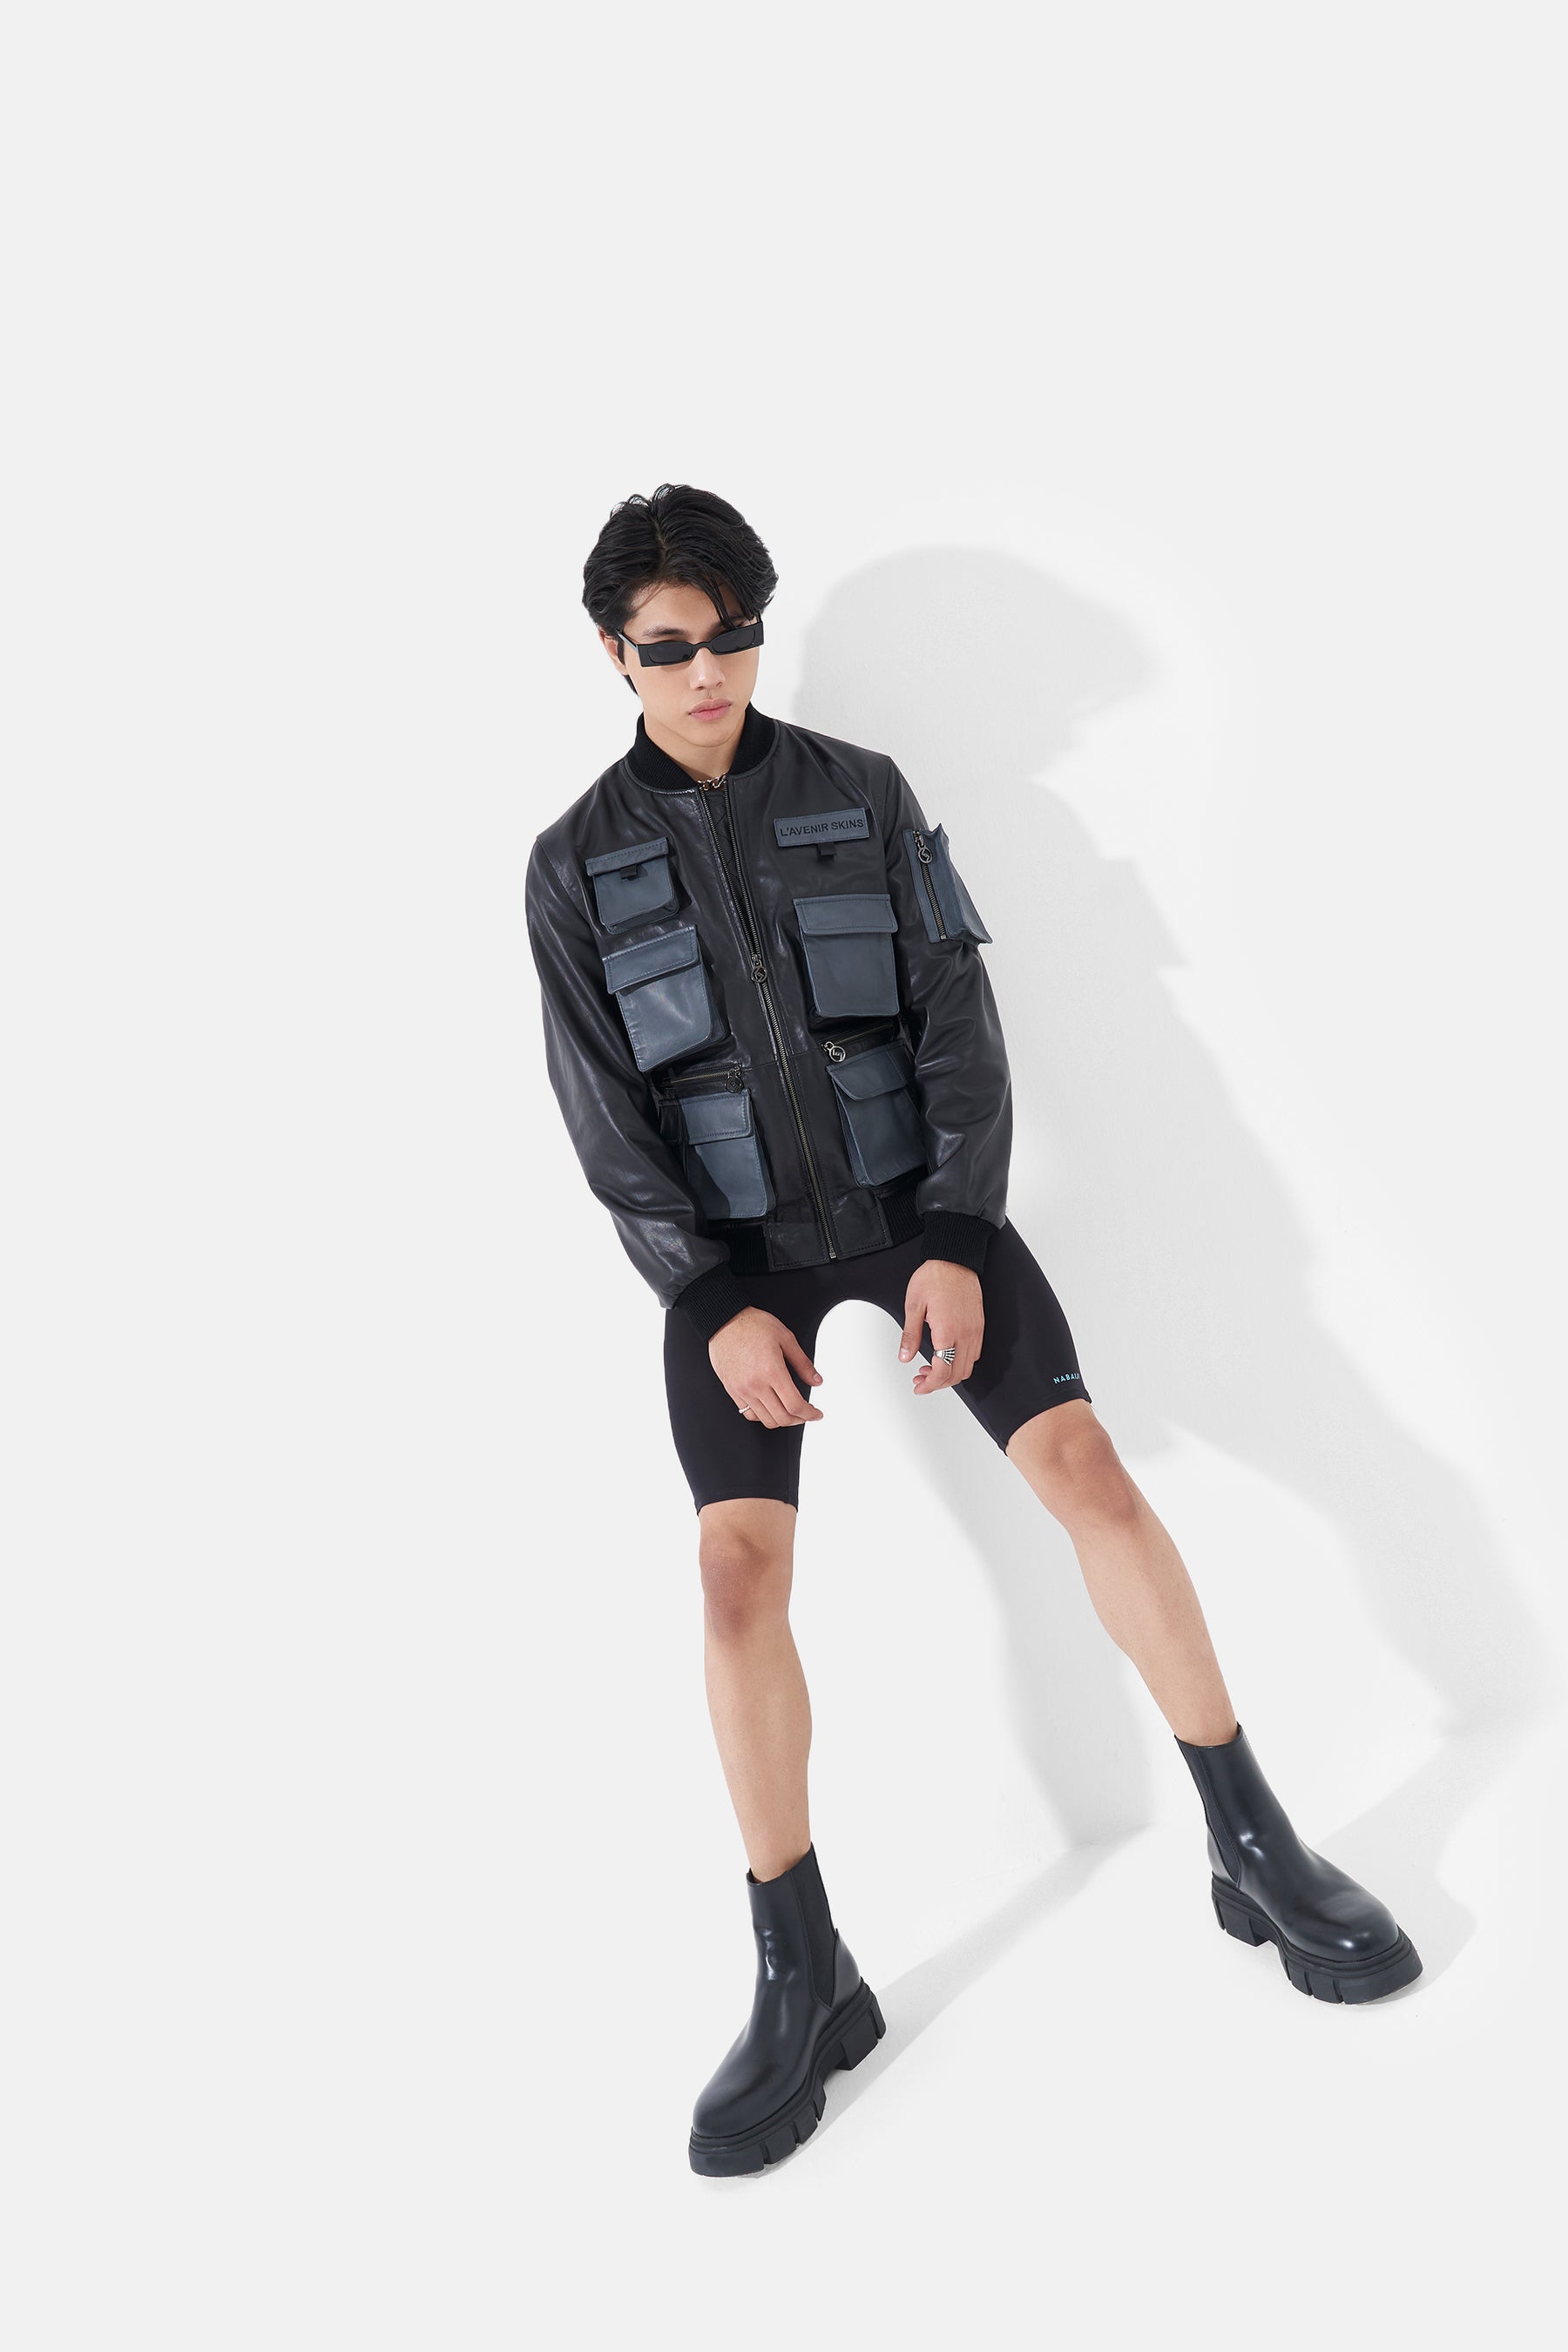 Louis Vuitton Leather Utility Vest - Black Outerwear, Clothing